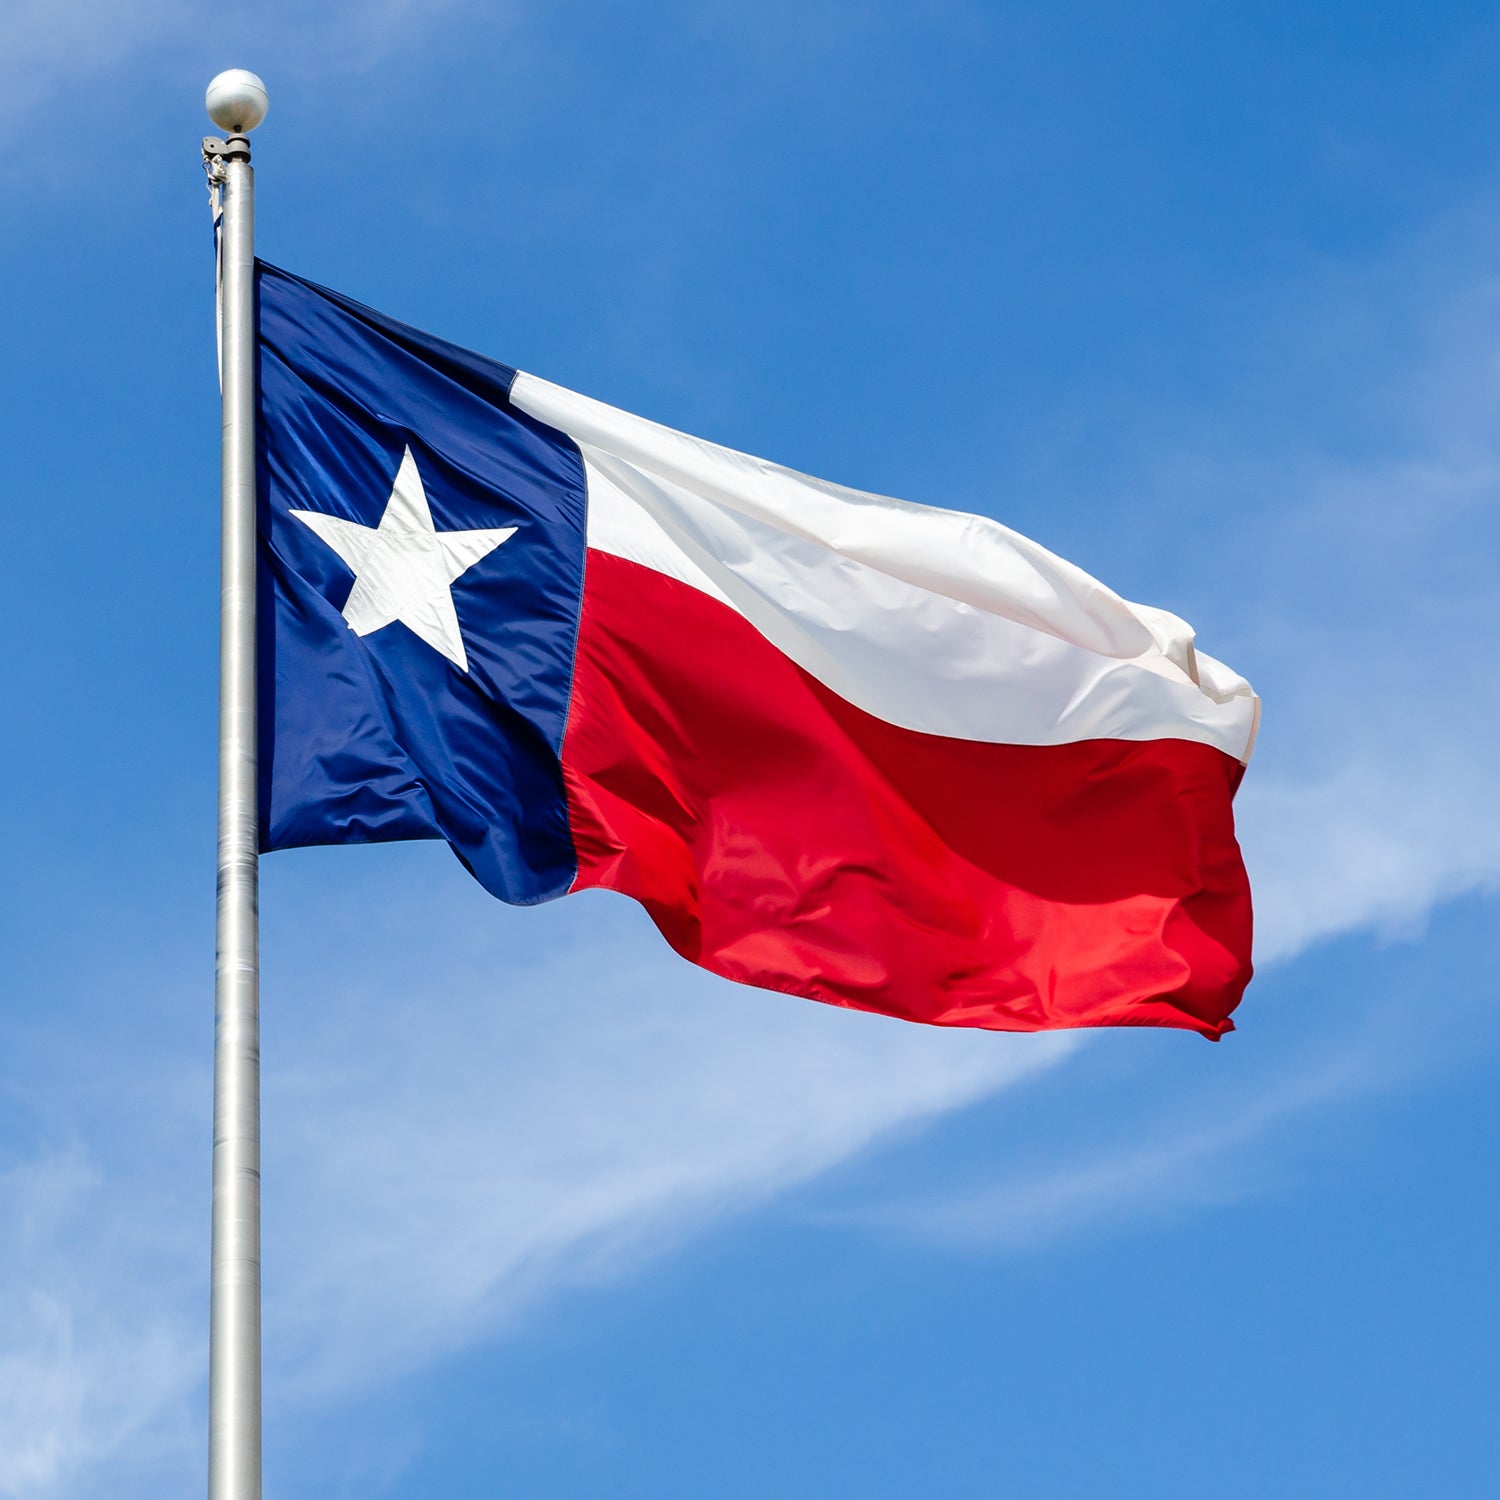 6' x 10' Texas Flag - Nylon